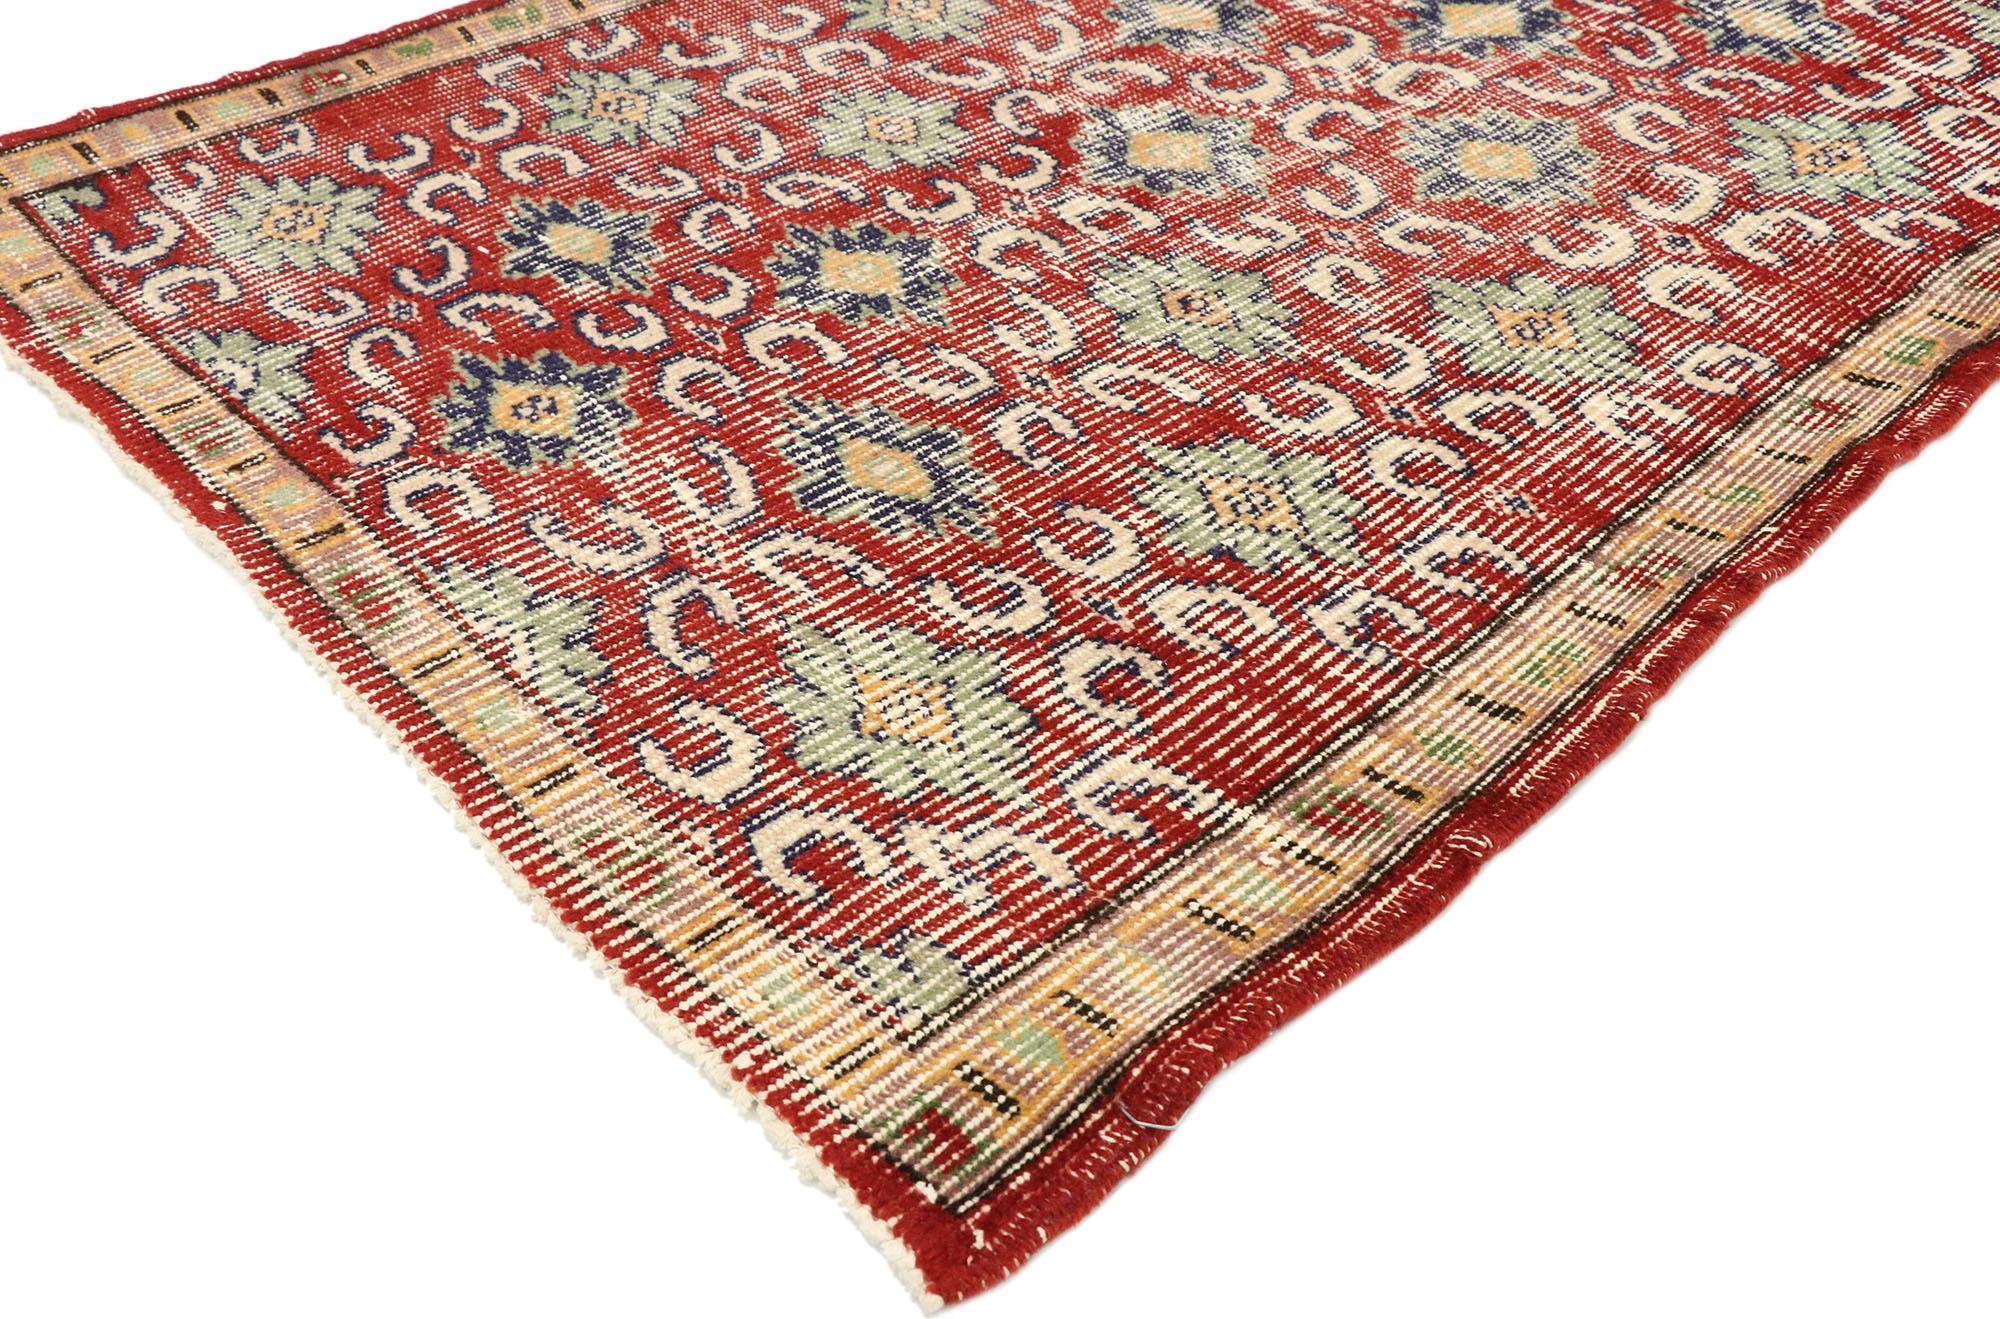 51896, Zeki Muren, tapis vintage turc de Sivas avec un style rustique anglais moderne. Chaleureux et accueillant, ce tapis turc Sivas vintage en laine nouée à la main et usée par le temps incarne à merveille le style rustique anglais moderne. Le